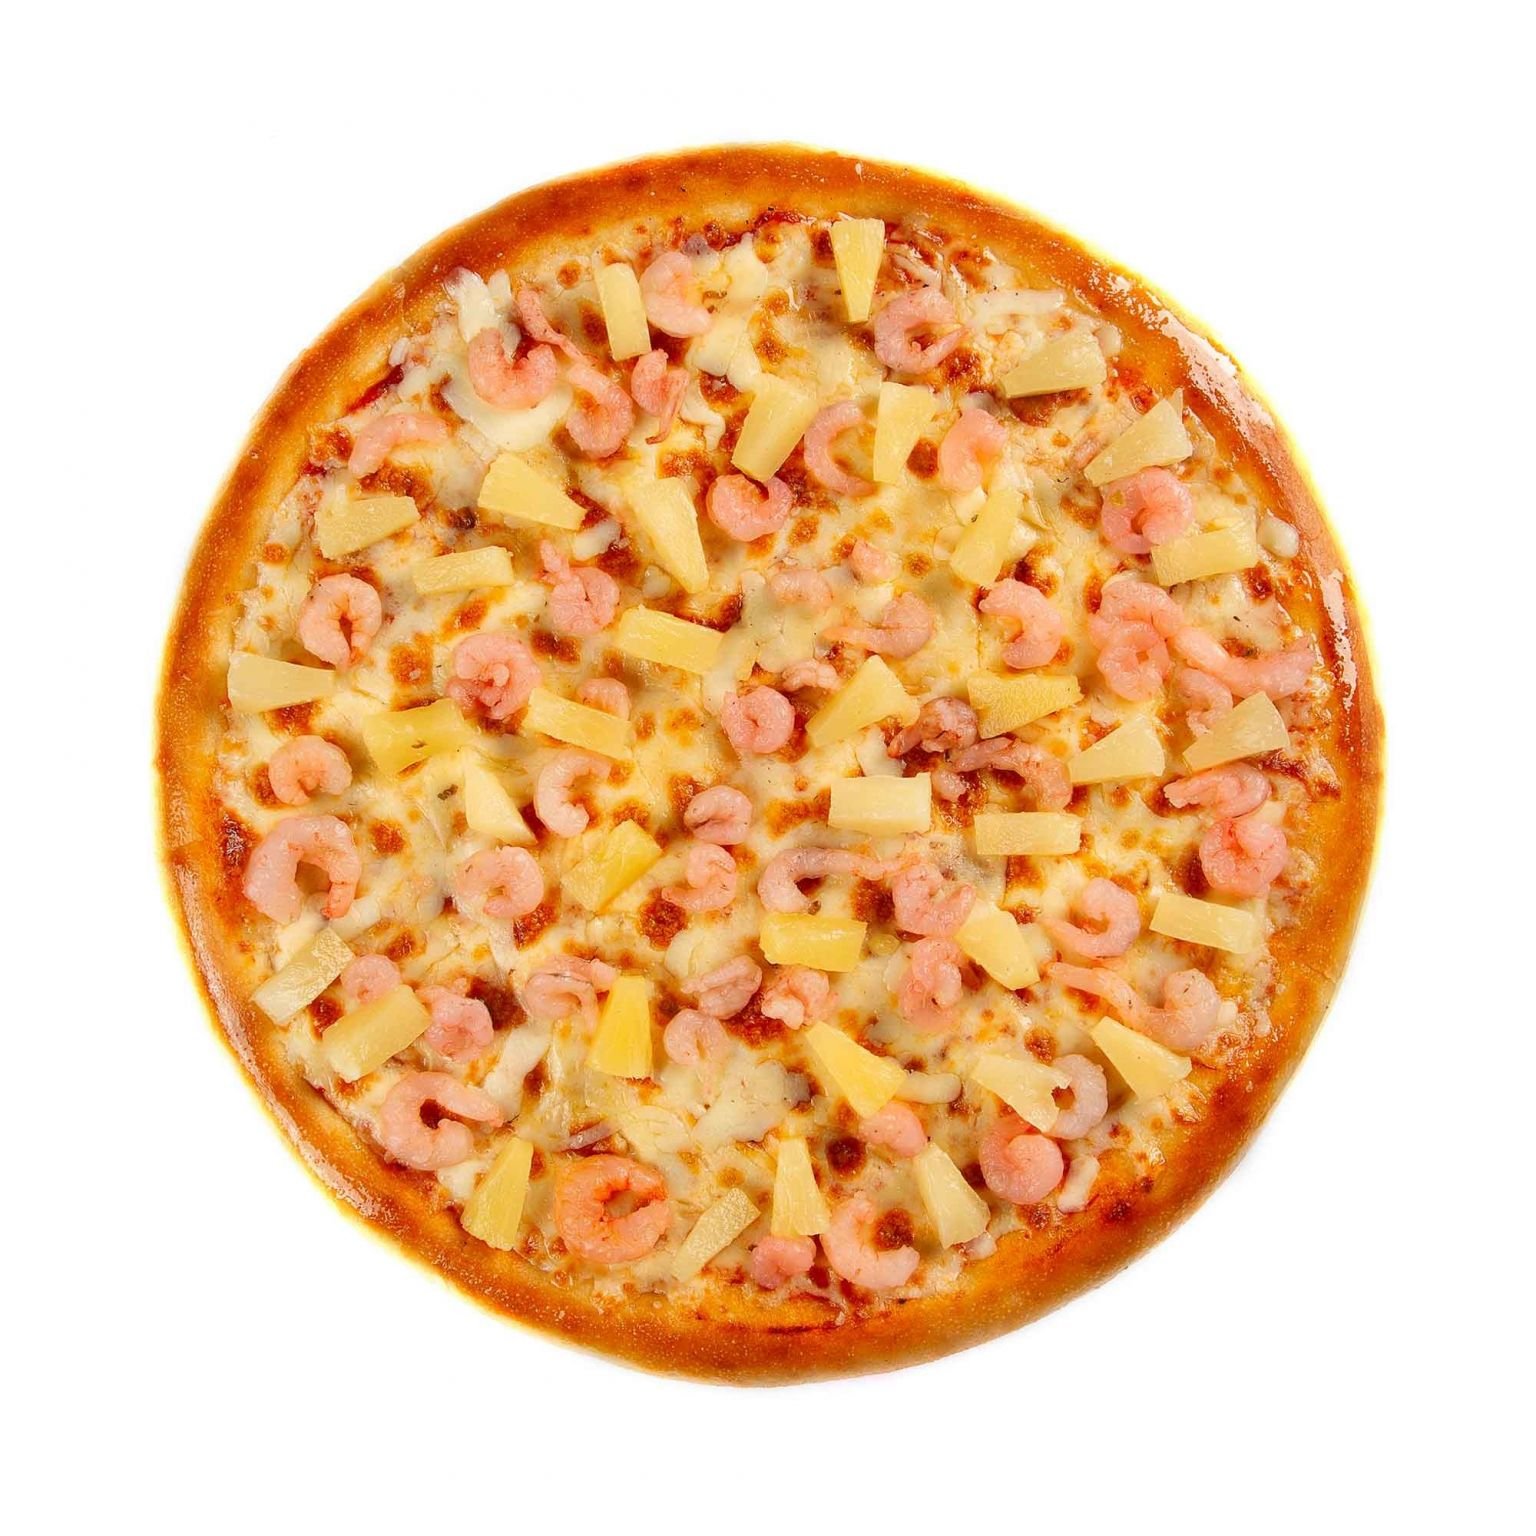 гавайская пицца из чего состоит фото 55